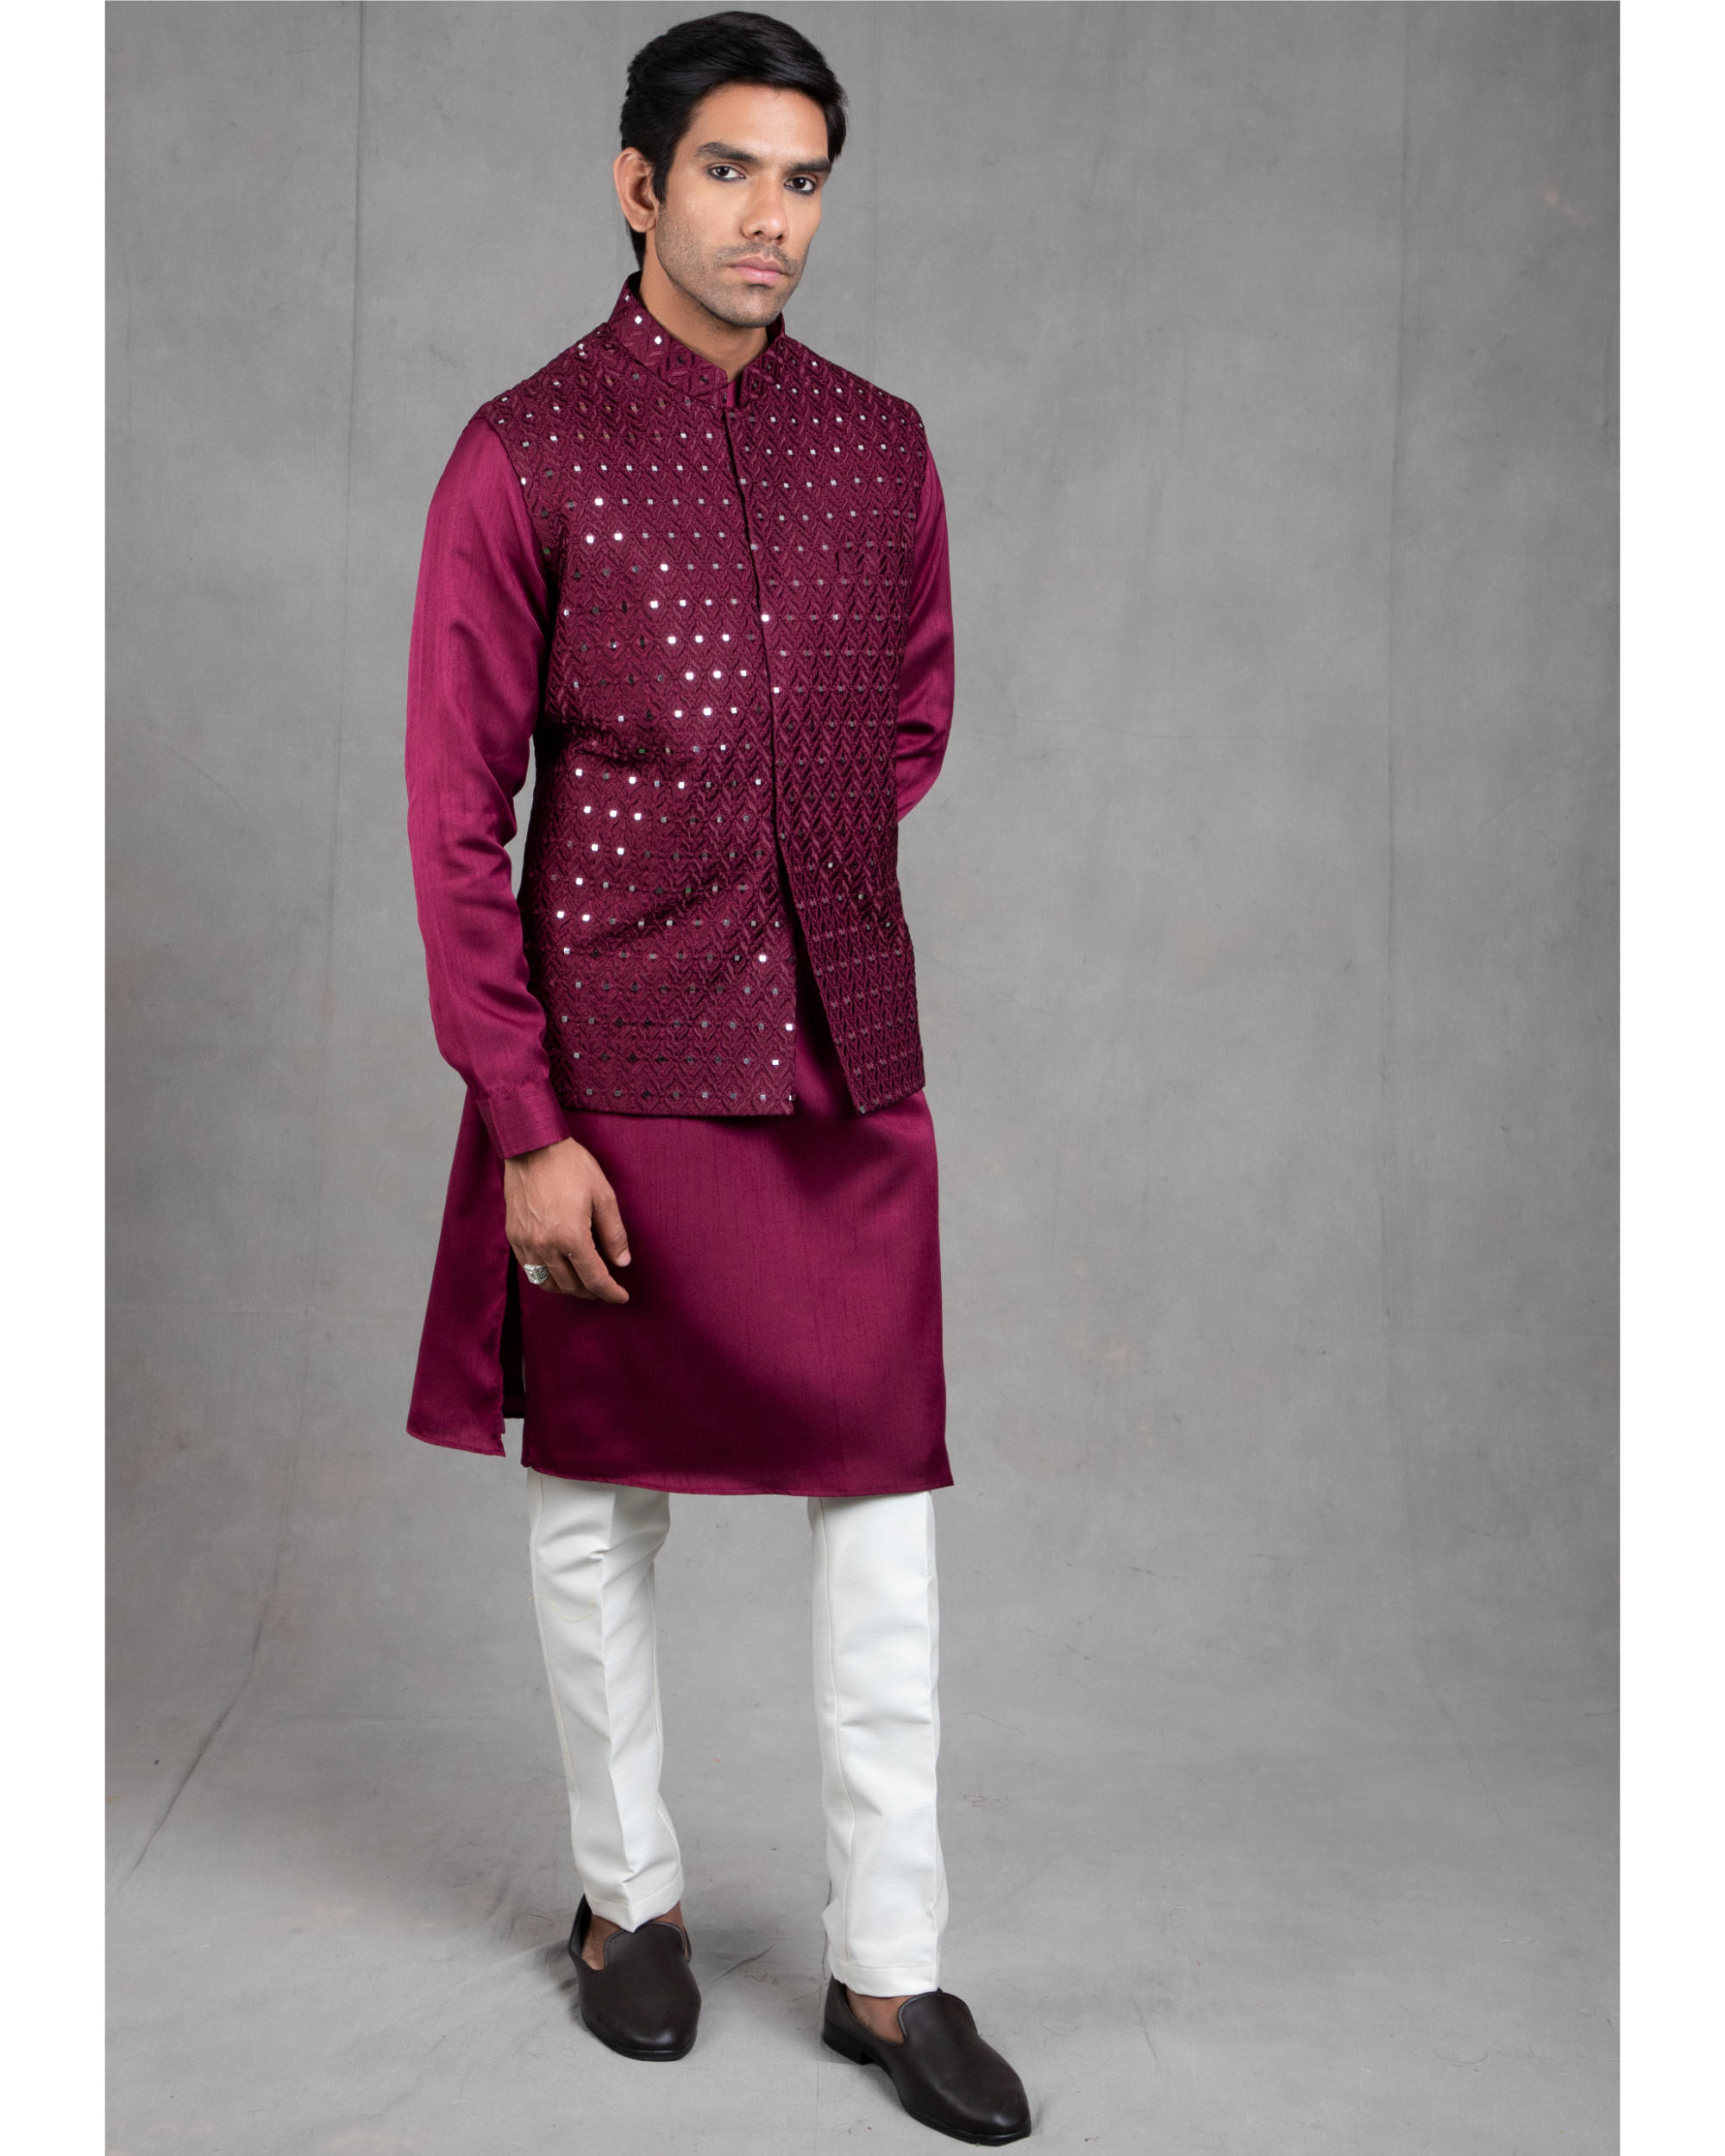 Buy Hangup Wine Sleeveless Nehru Jacket for Men Online @ Tata CLiQ